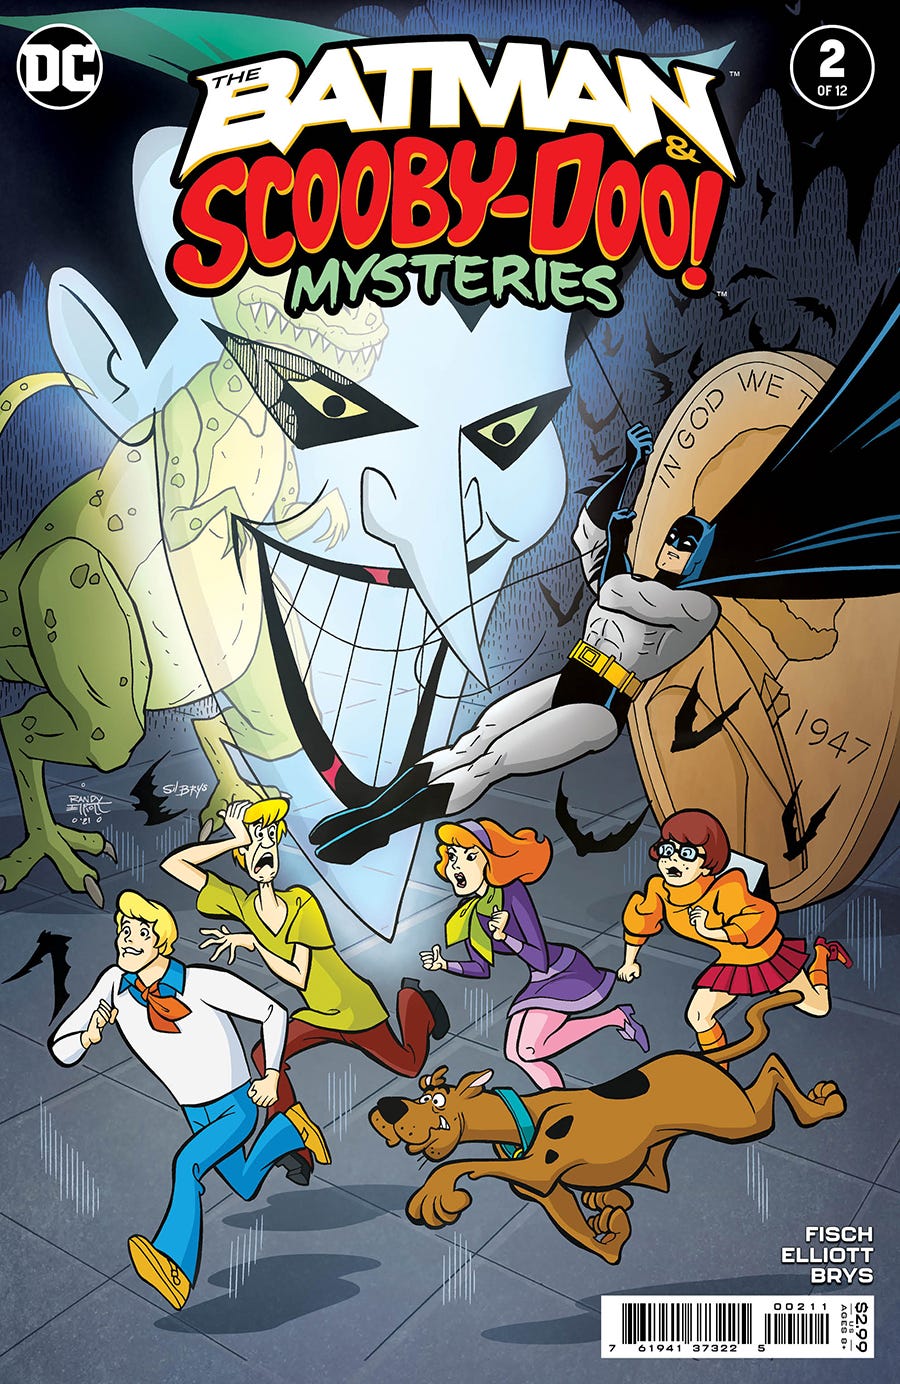 Batman & Scooby-Doo Mysteries #2 (of 12)